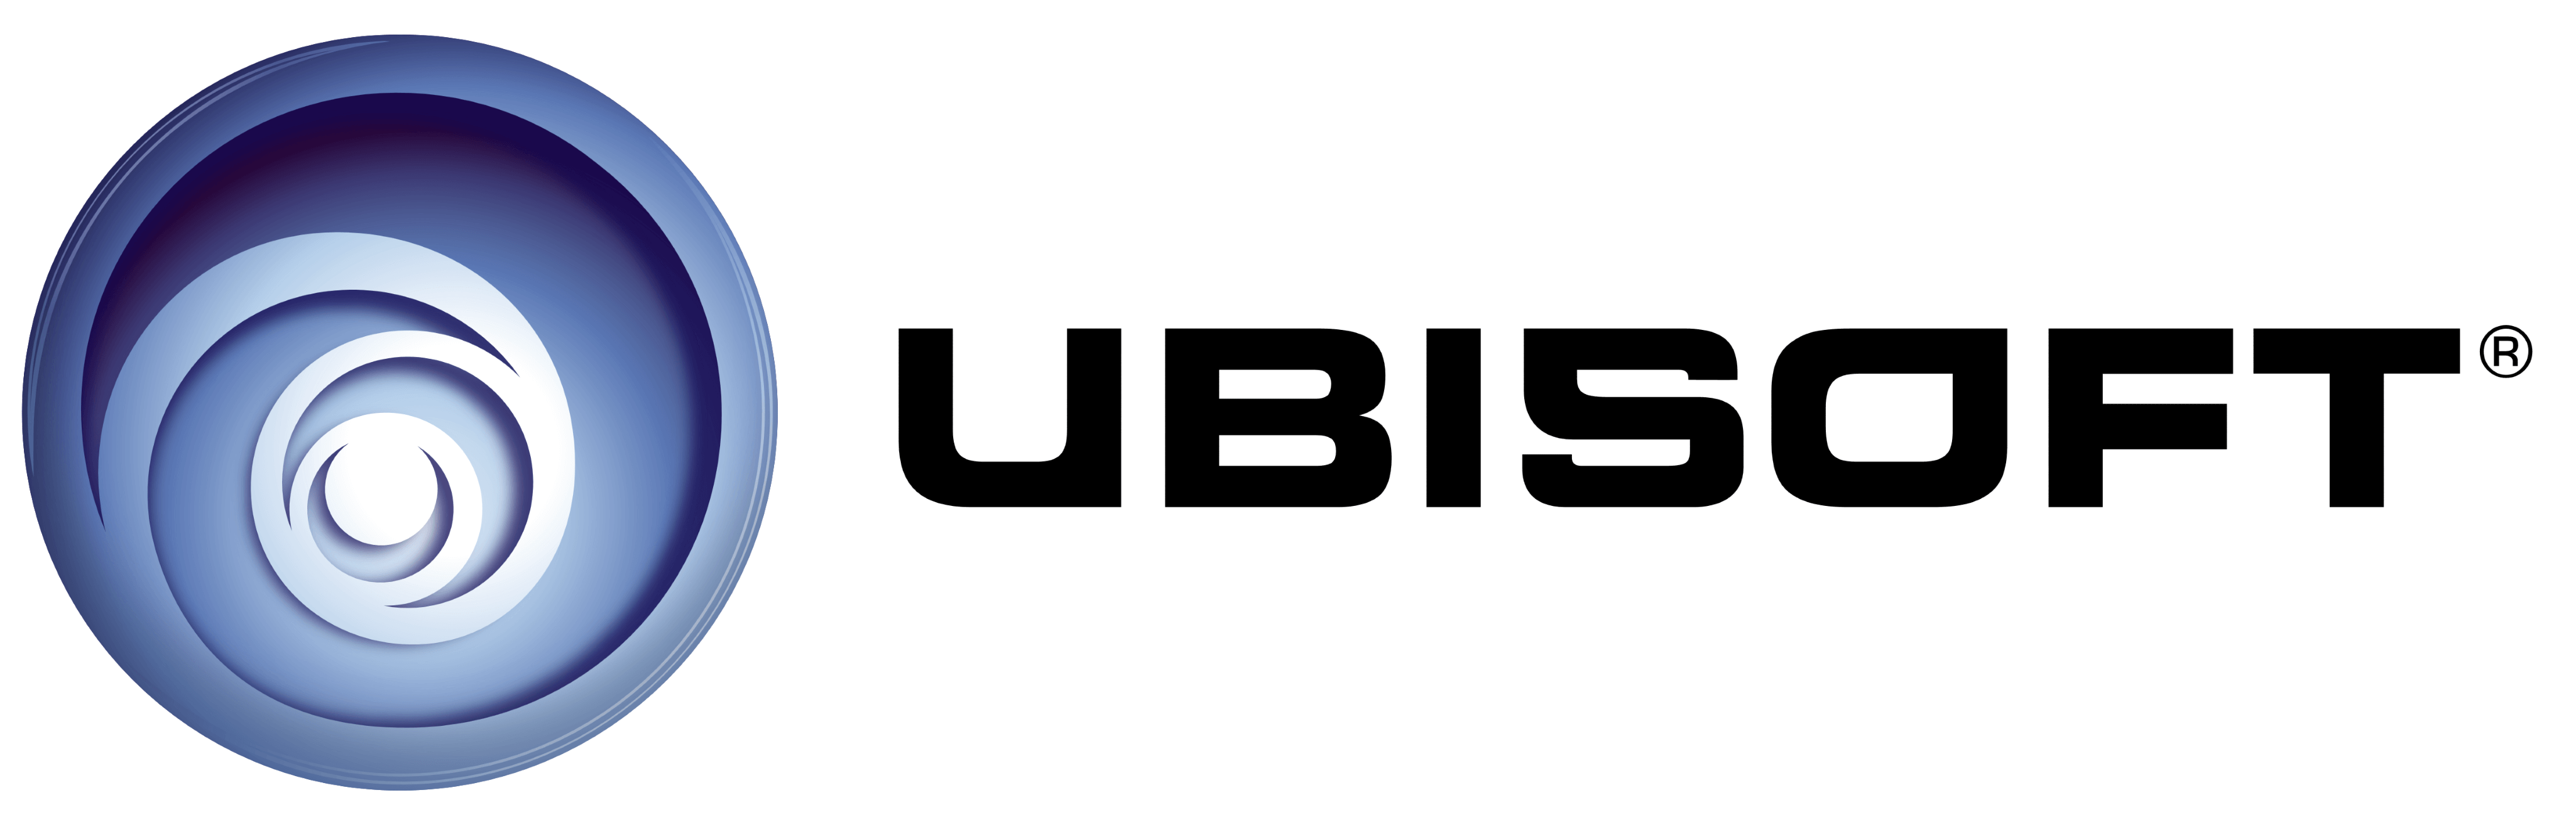 Ubisoft logo, logotype